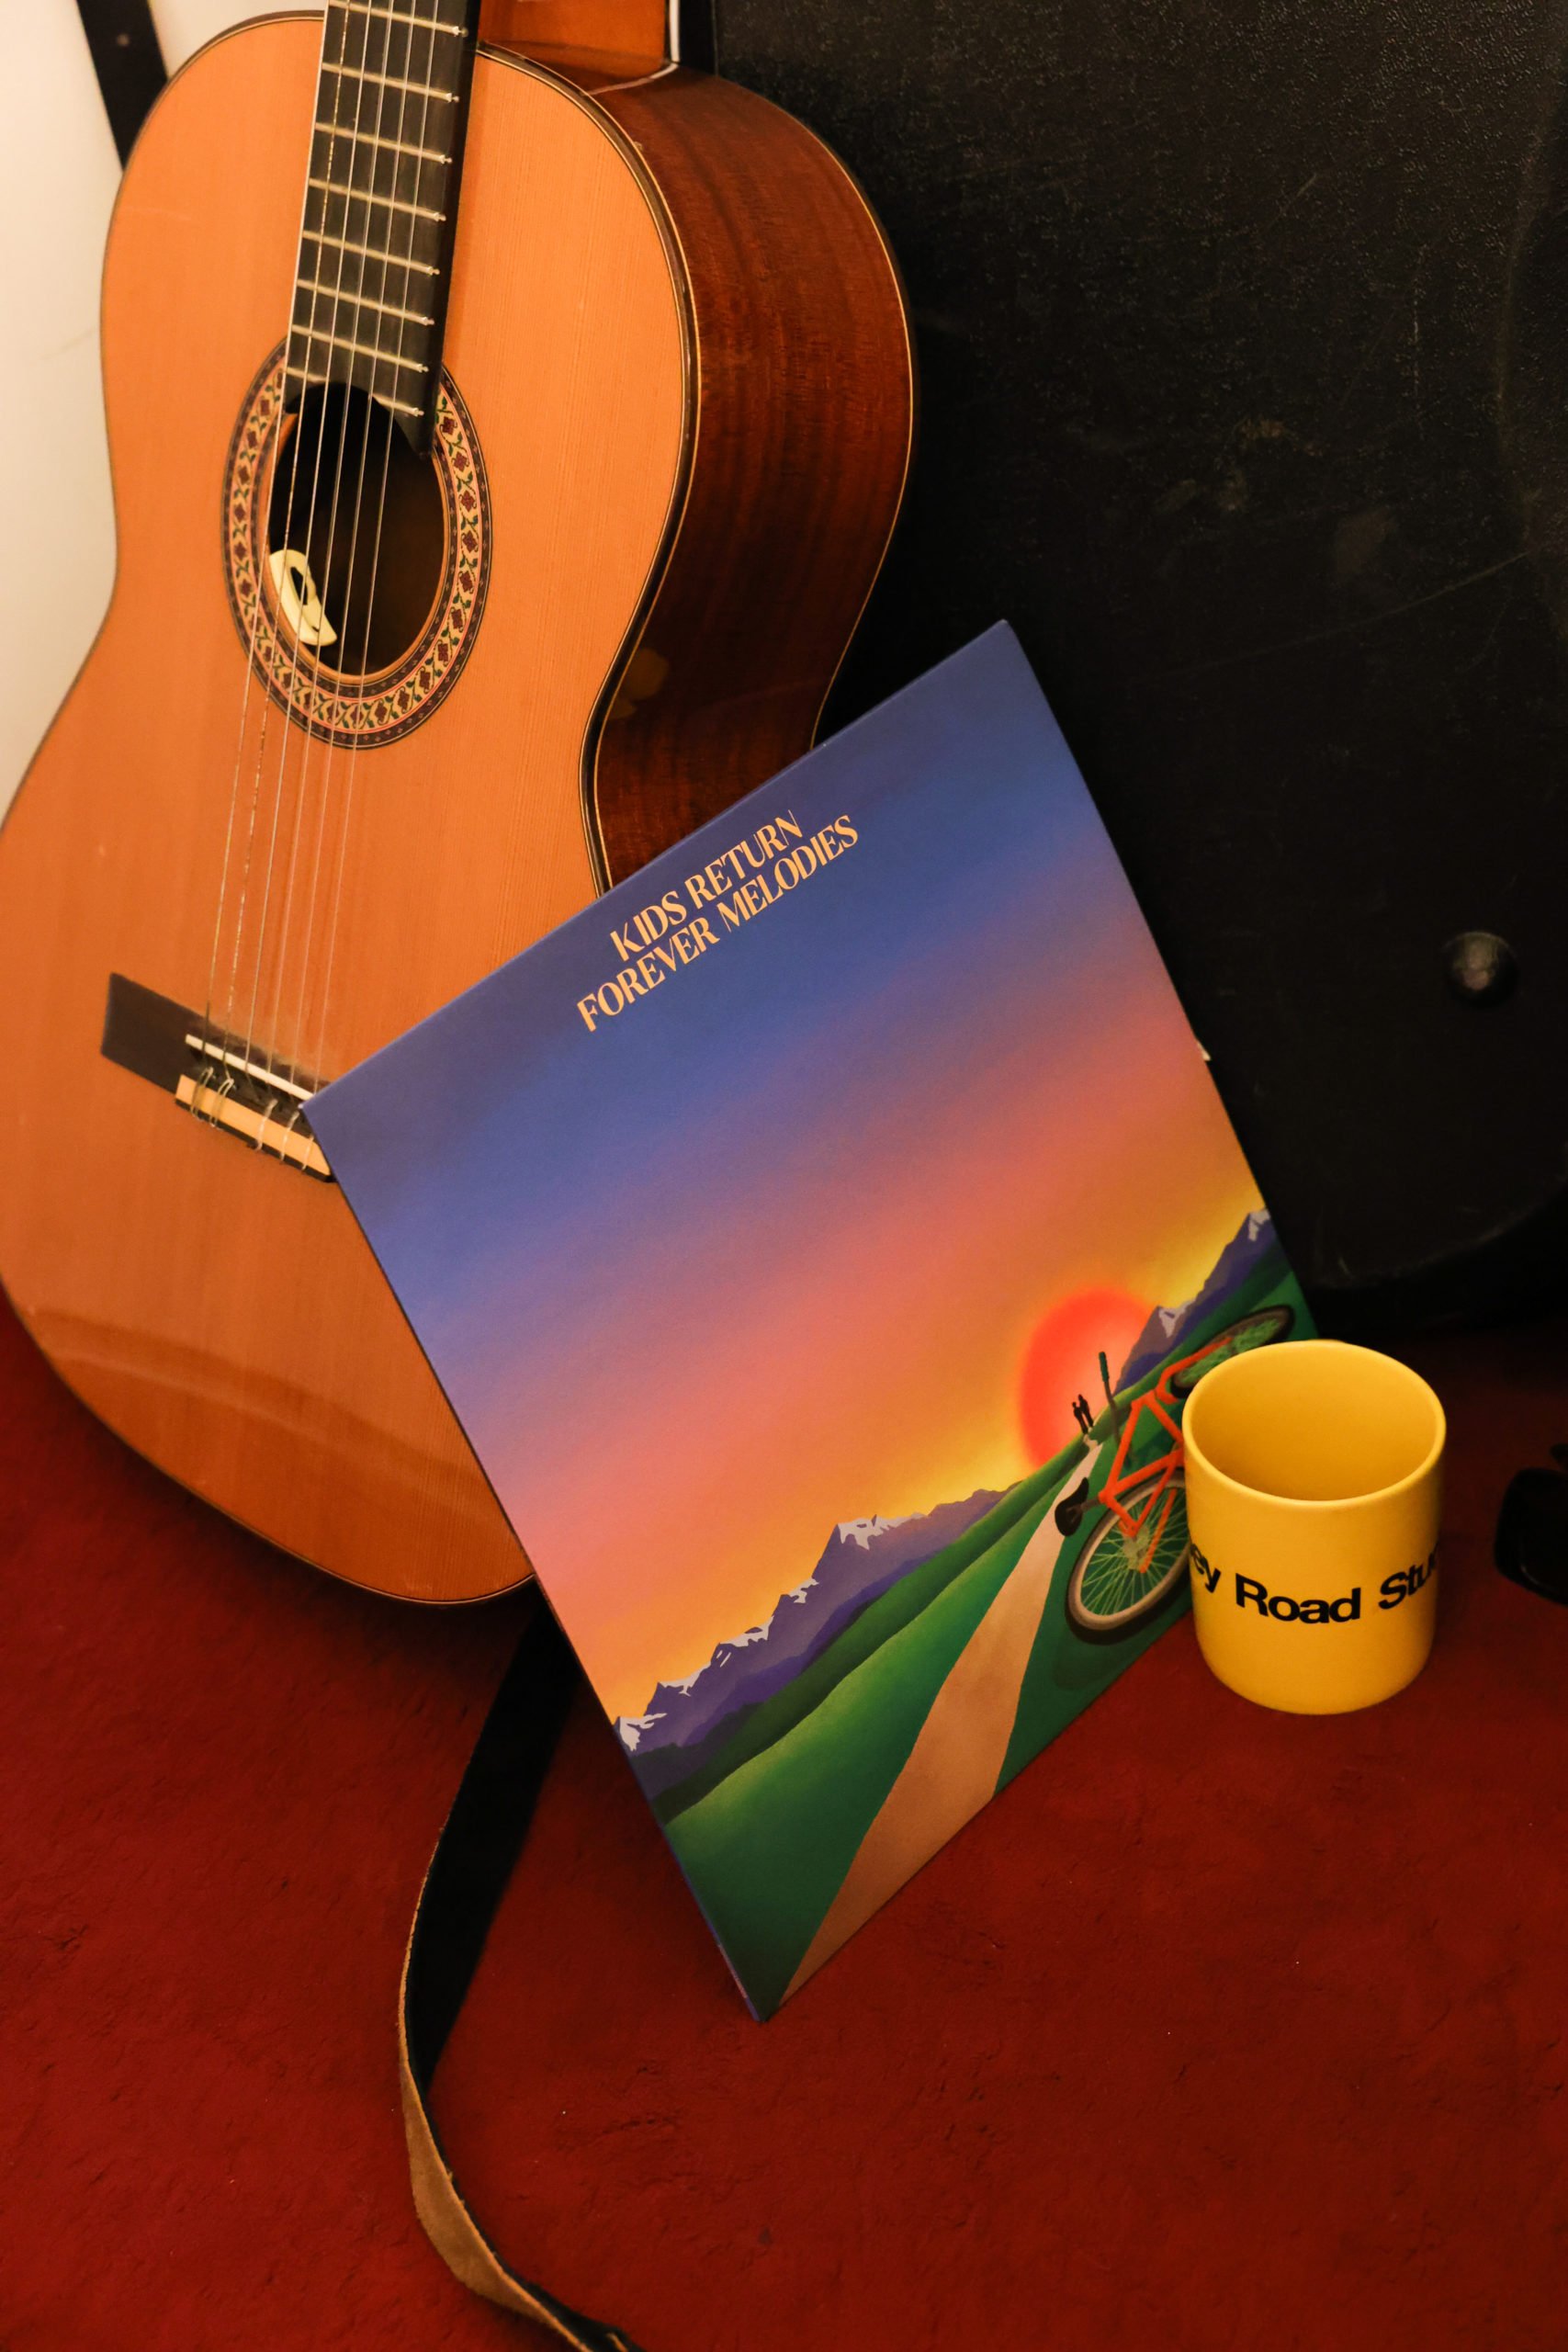 Le vinyle des Kids Return est posé sur une guitare sèche à côté d'ue tasse jaune abbey road.